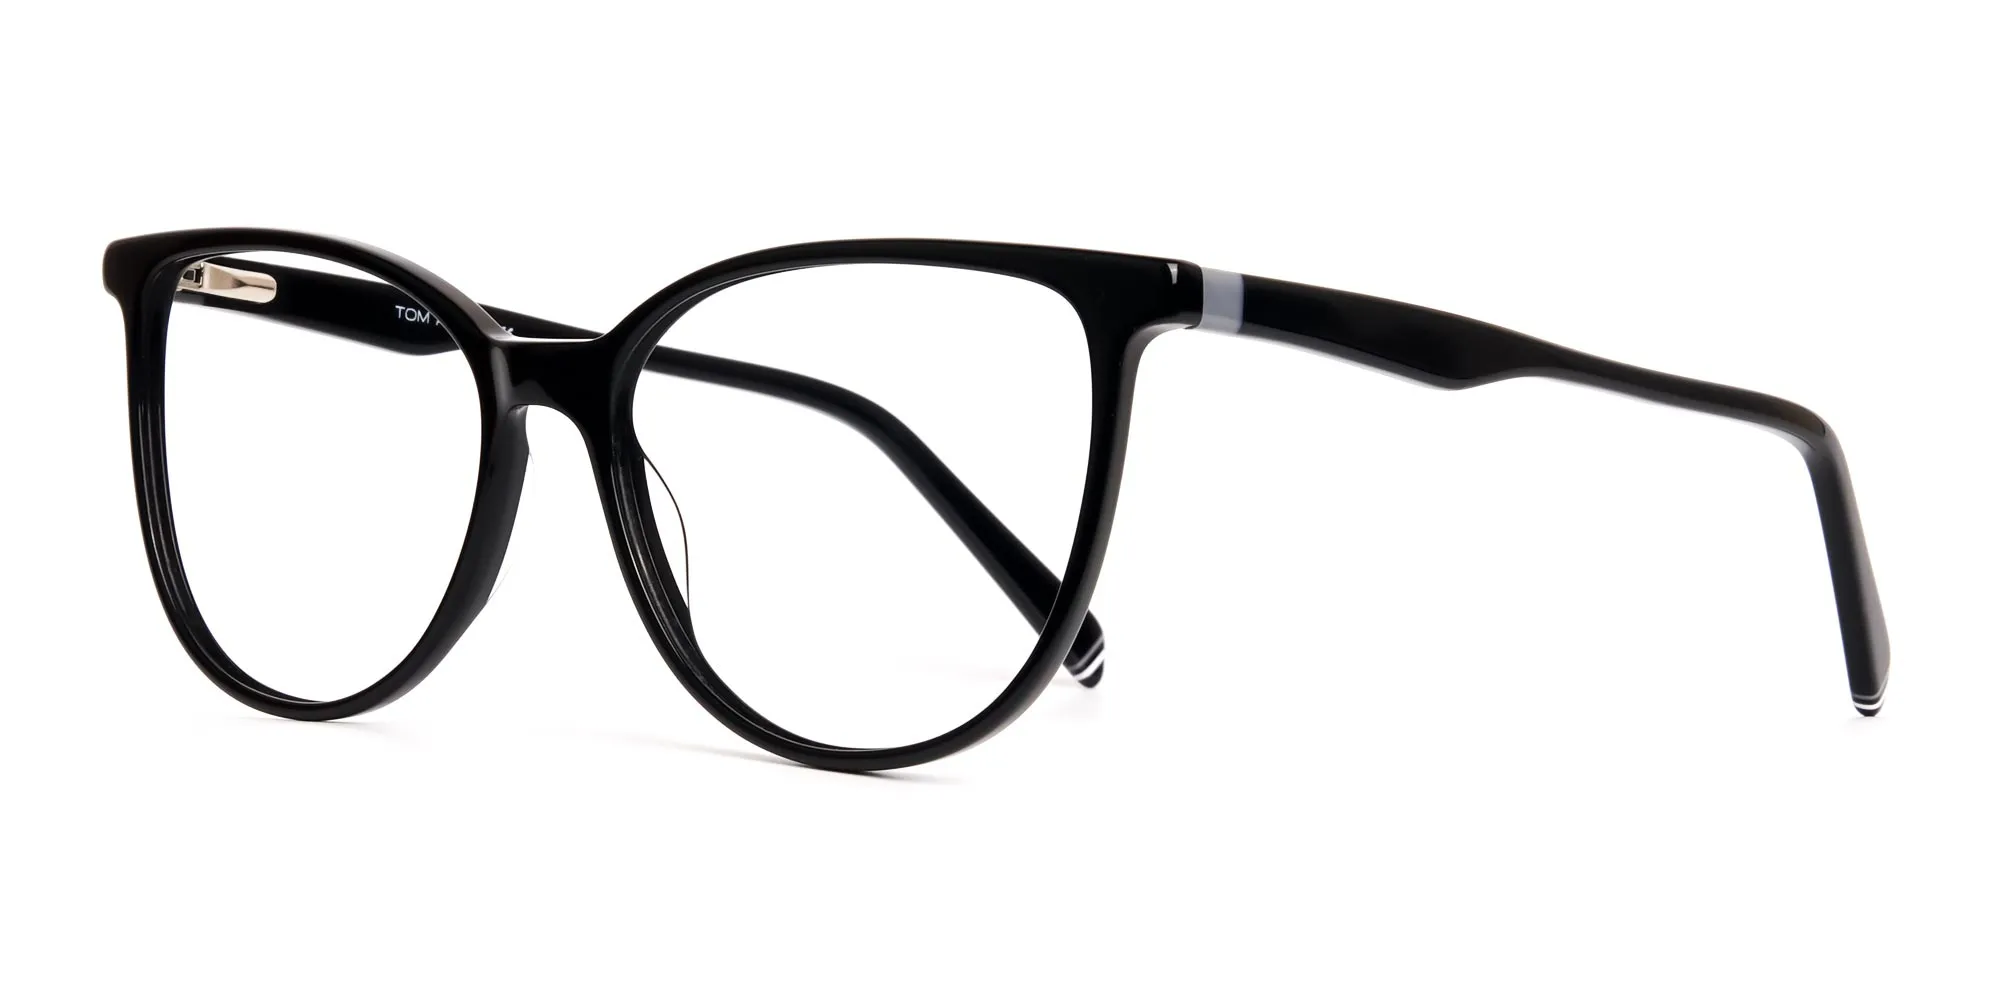 Glossy-Black-Cat-eye-Glasses-Frames-2